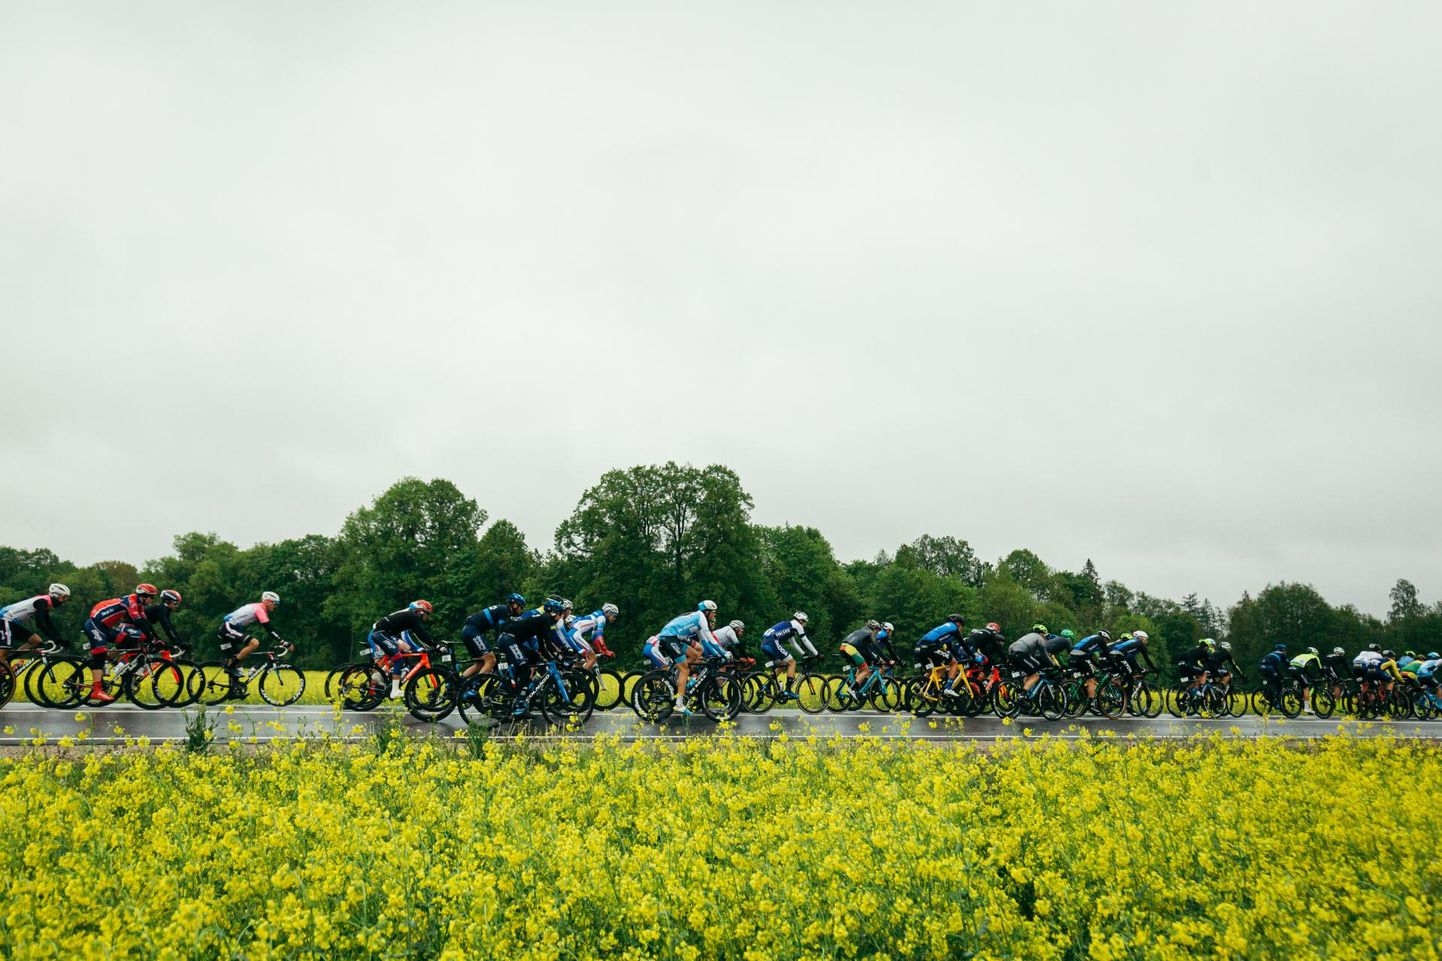 Rahvusvahelise jalgratturite liidu kalendrisse kuuluv profiratturite võidusõit «Tour of Estonia» toob stardijoonele sadakond võistlejat. Foto on tehtud eelmisel, 2019. aasta velotuuril.